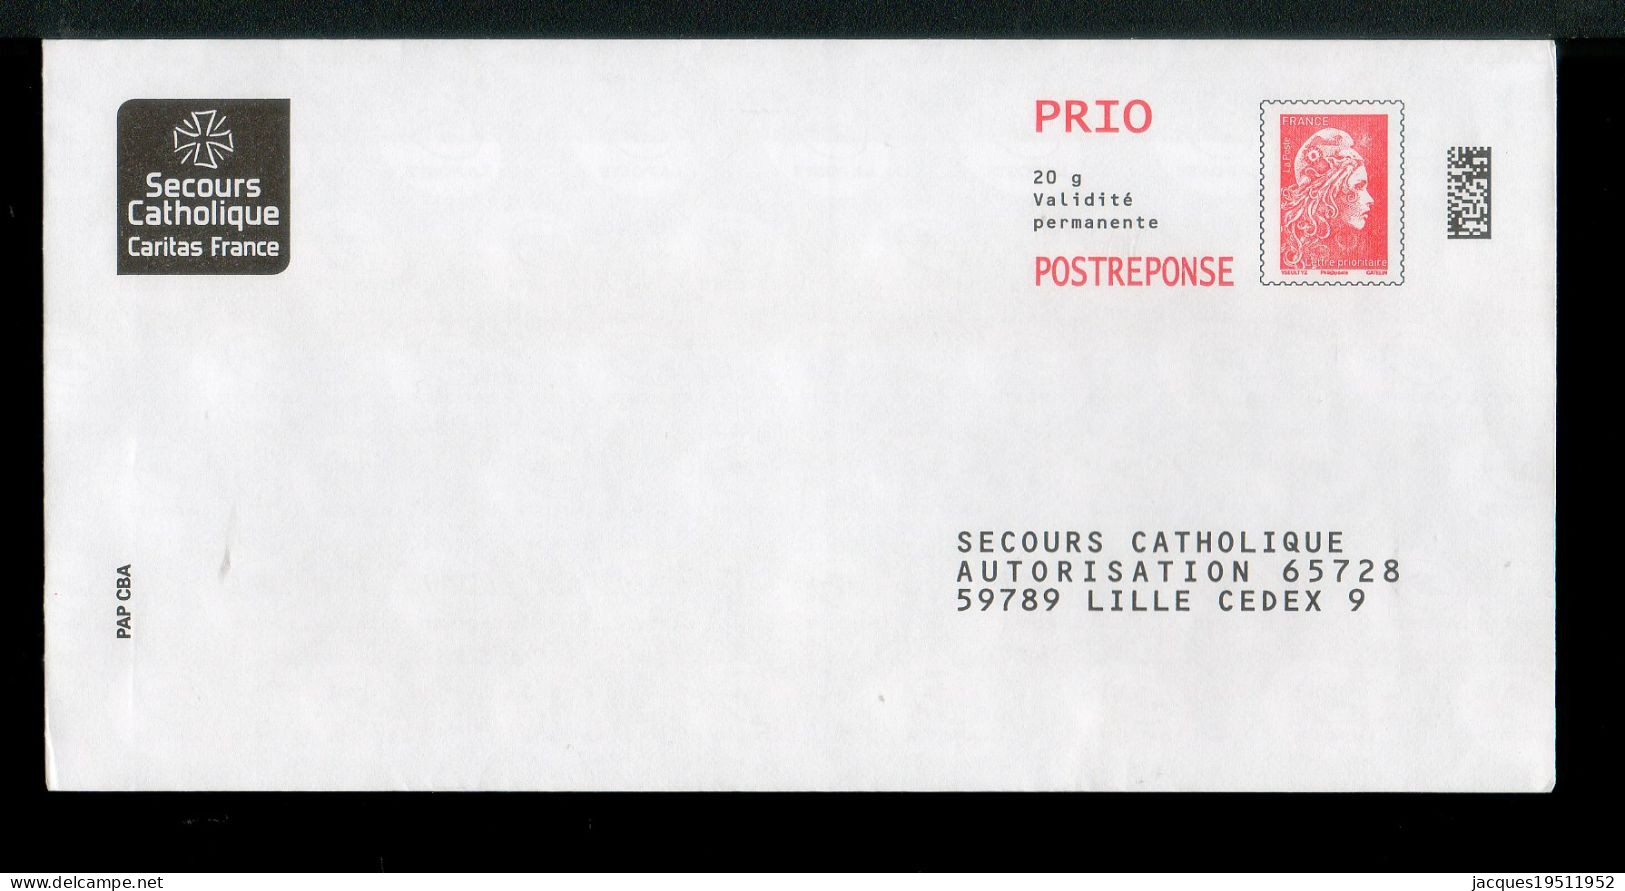 NJ-180 - Yzeult YZ (PRIO) - Secours Catholique - N° 232063 - PAP: Ristampa/Marianne L'Engagée